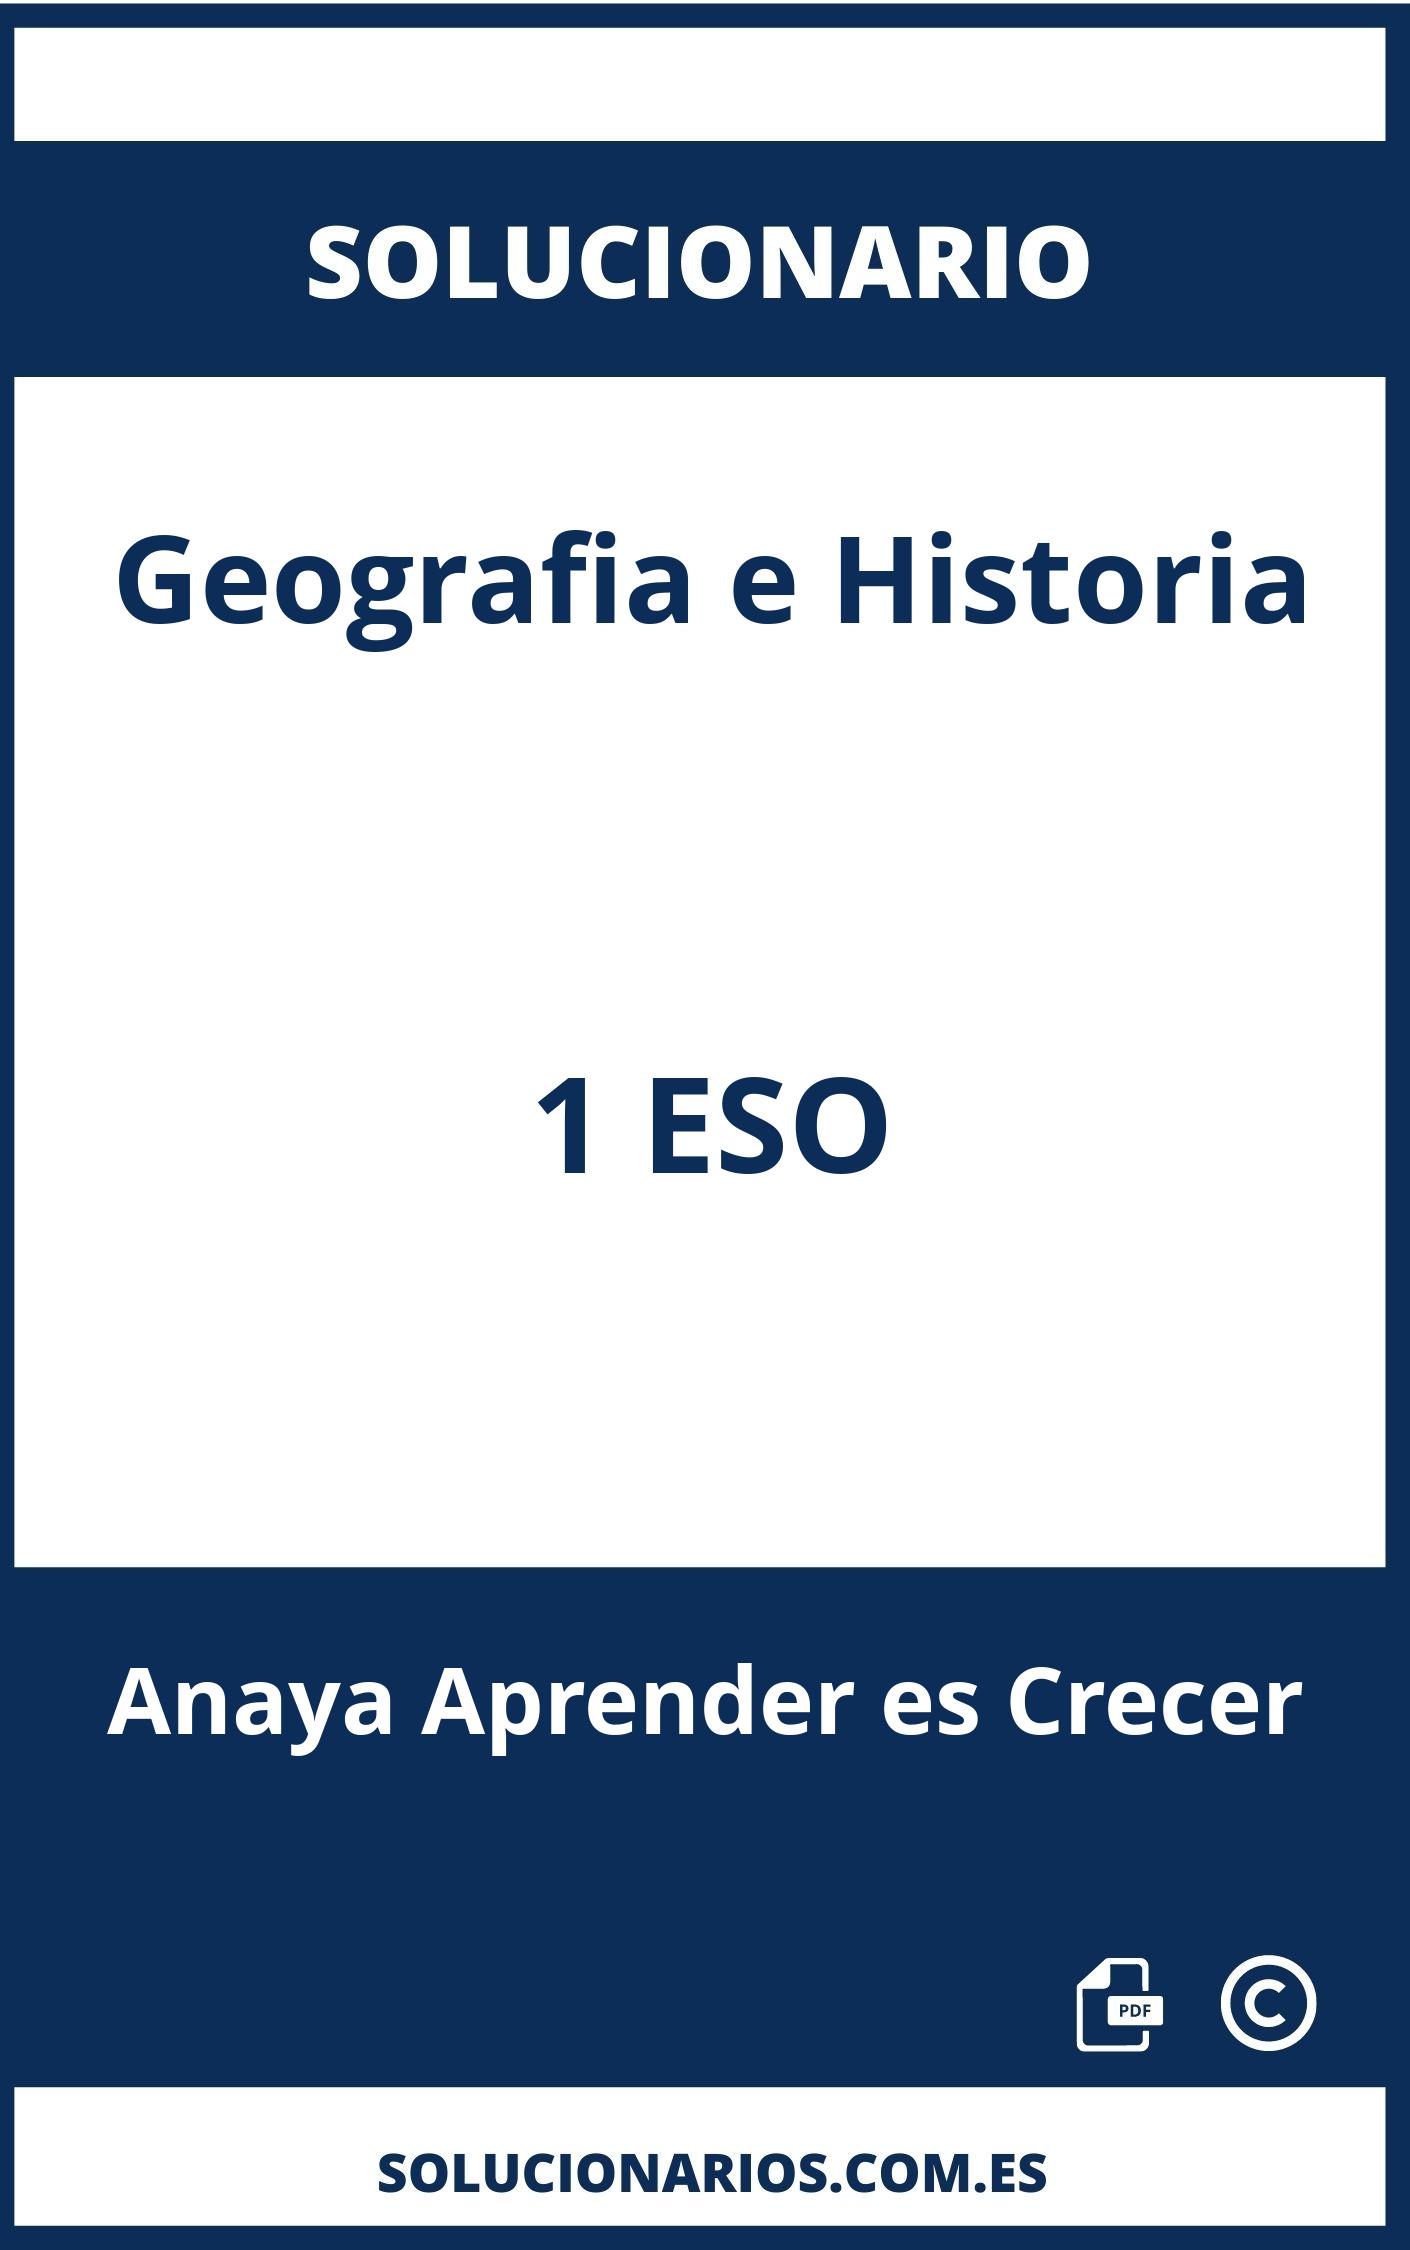 Solucionario Geografia e Historia 1 ESO Anaya Aprender es Crecer